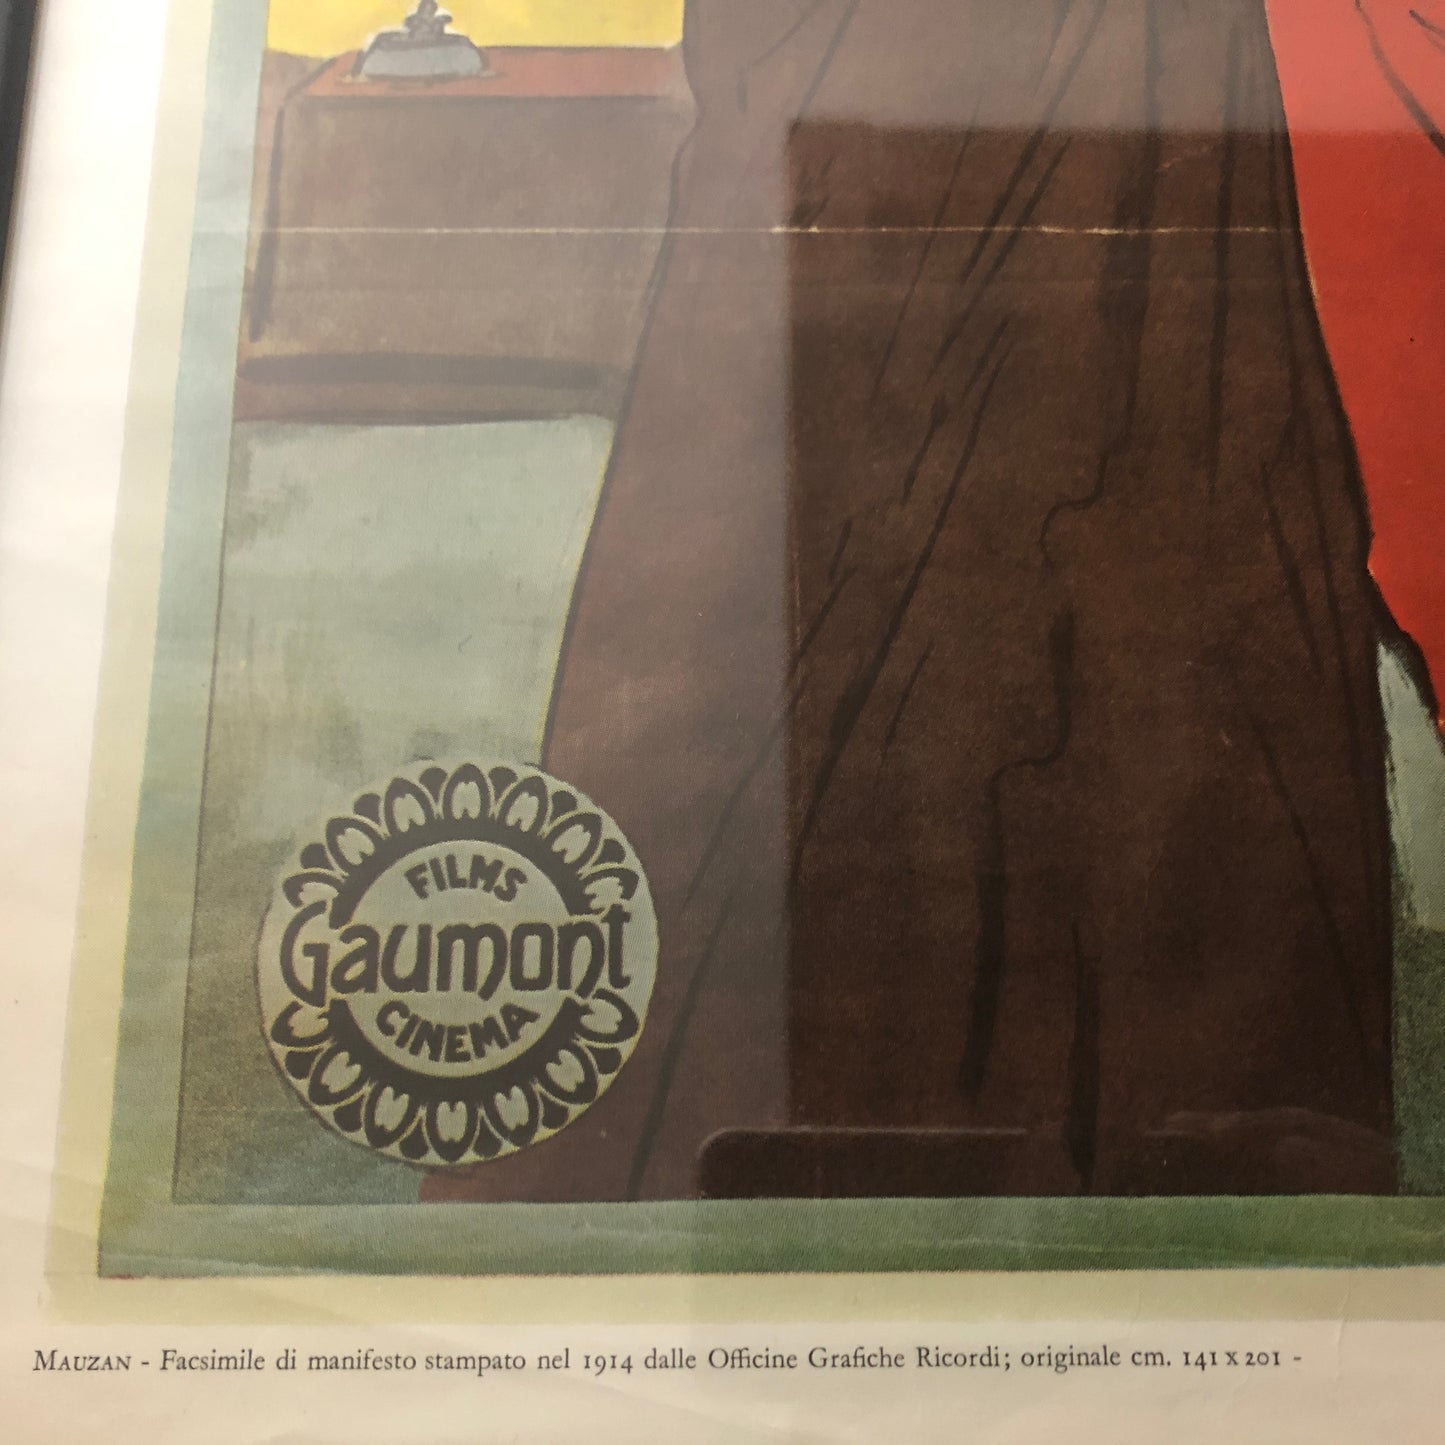 Films Gaumont Cinema, Manifesto Pubblicitario Anno 1914 Disegnato da Achille Luciano Mauzan